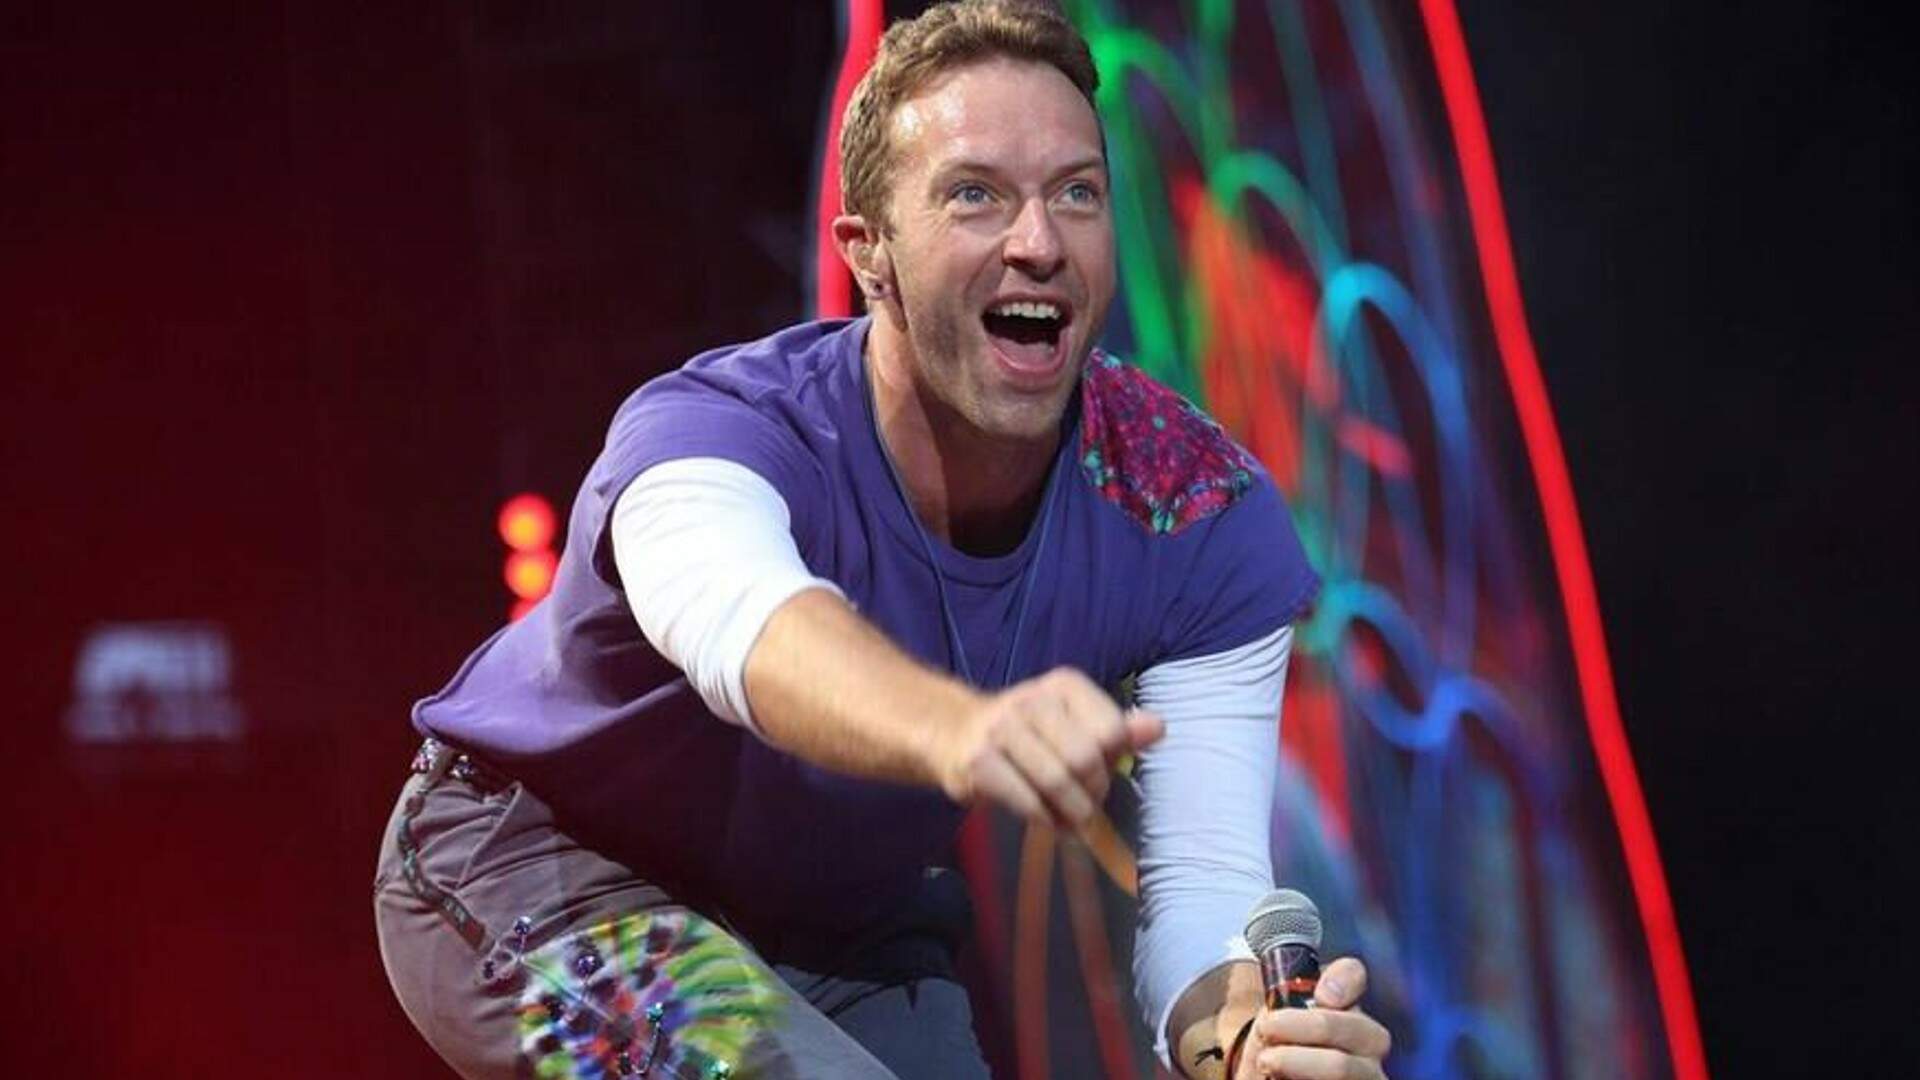 Roda de samba, academia e mais: veja os ‘rolês’ de Chris Martin, do Coldplay, em São Paulo - Metropolitana FM